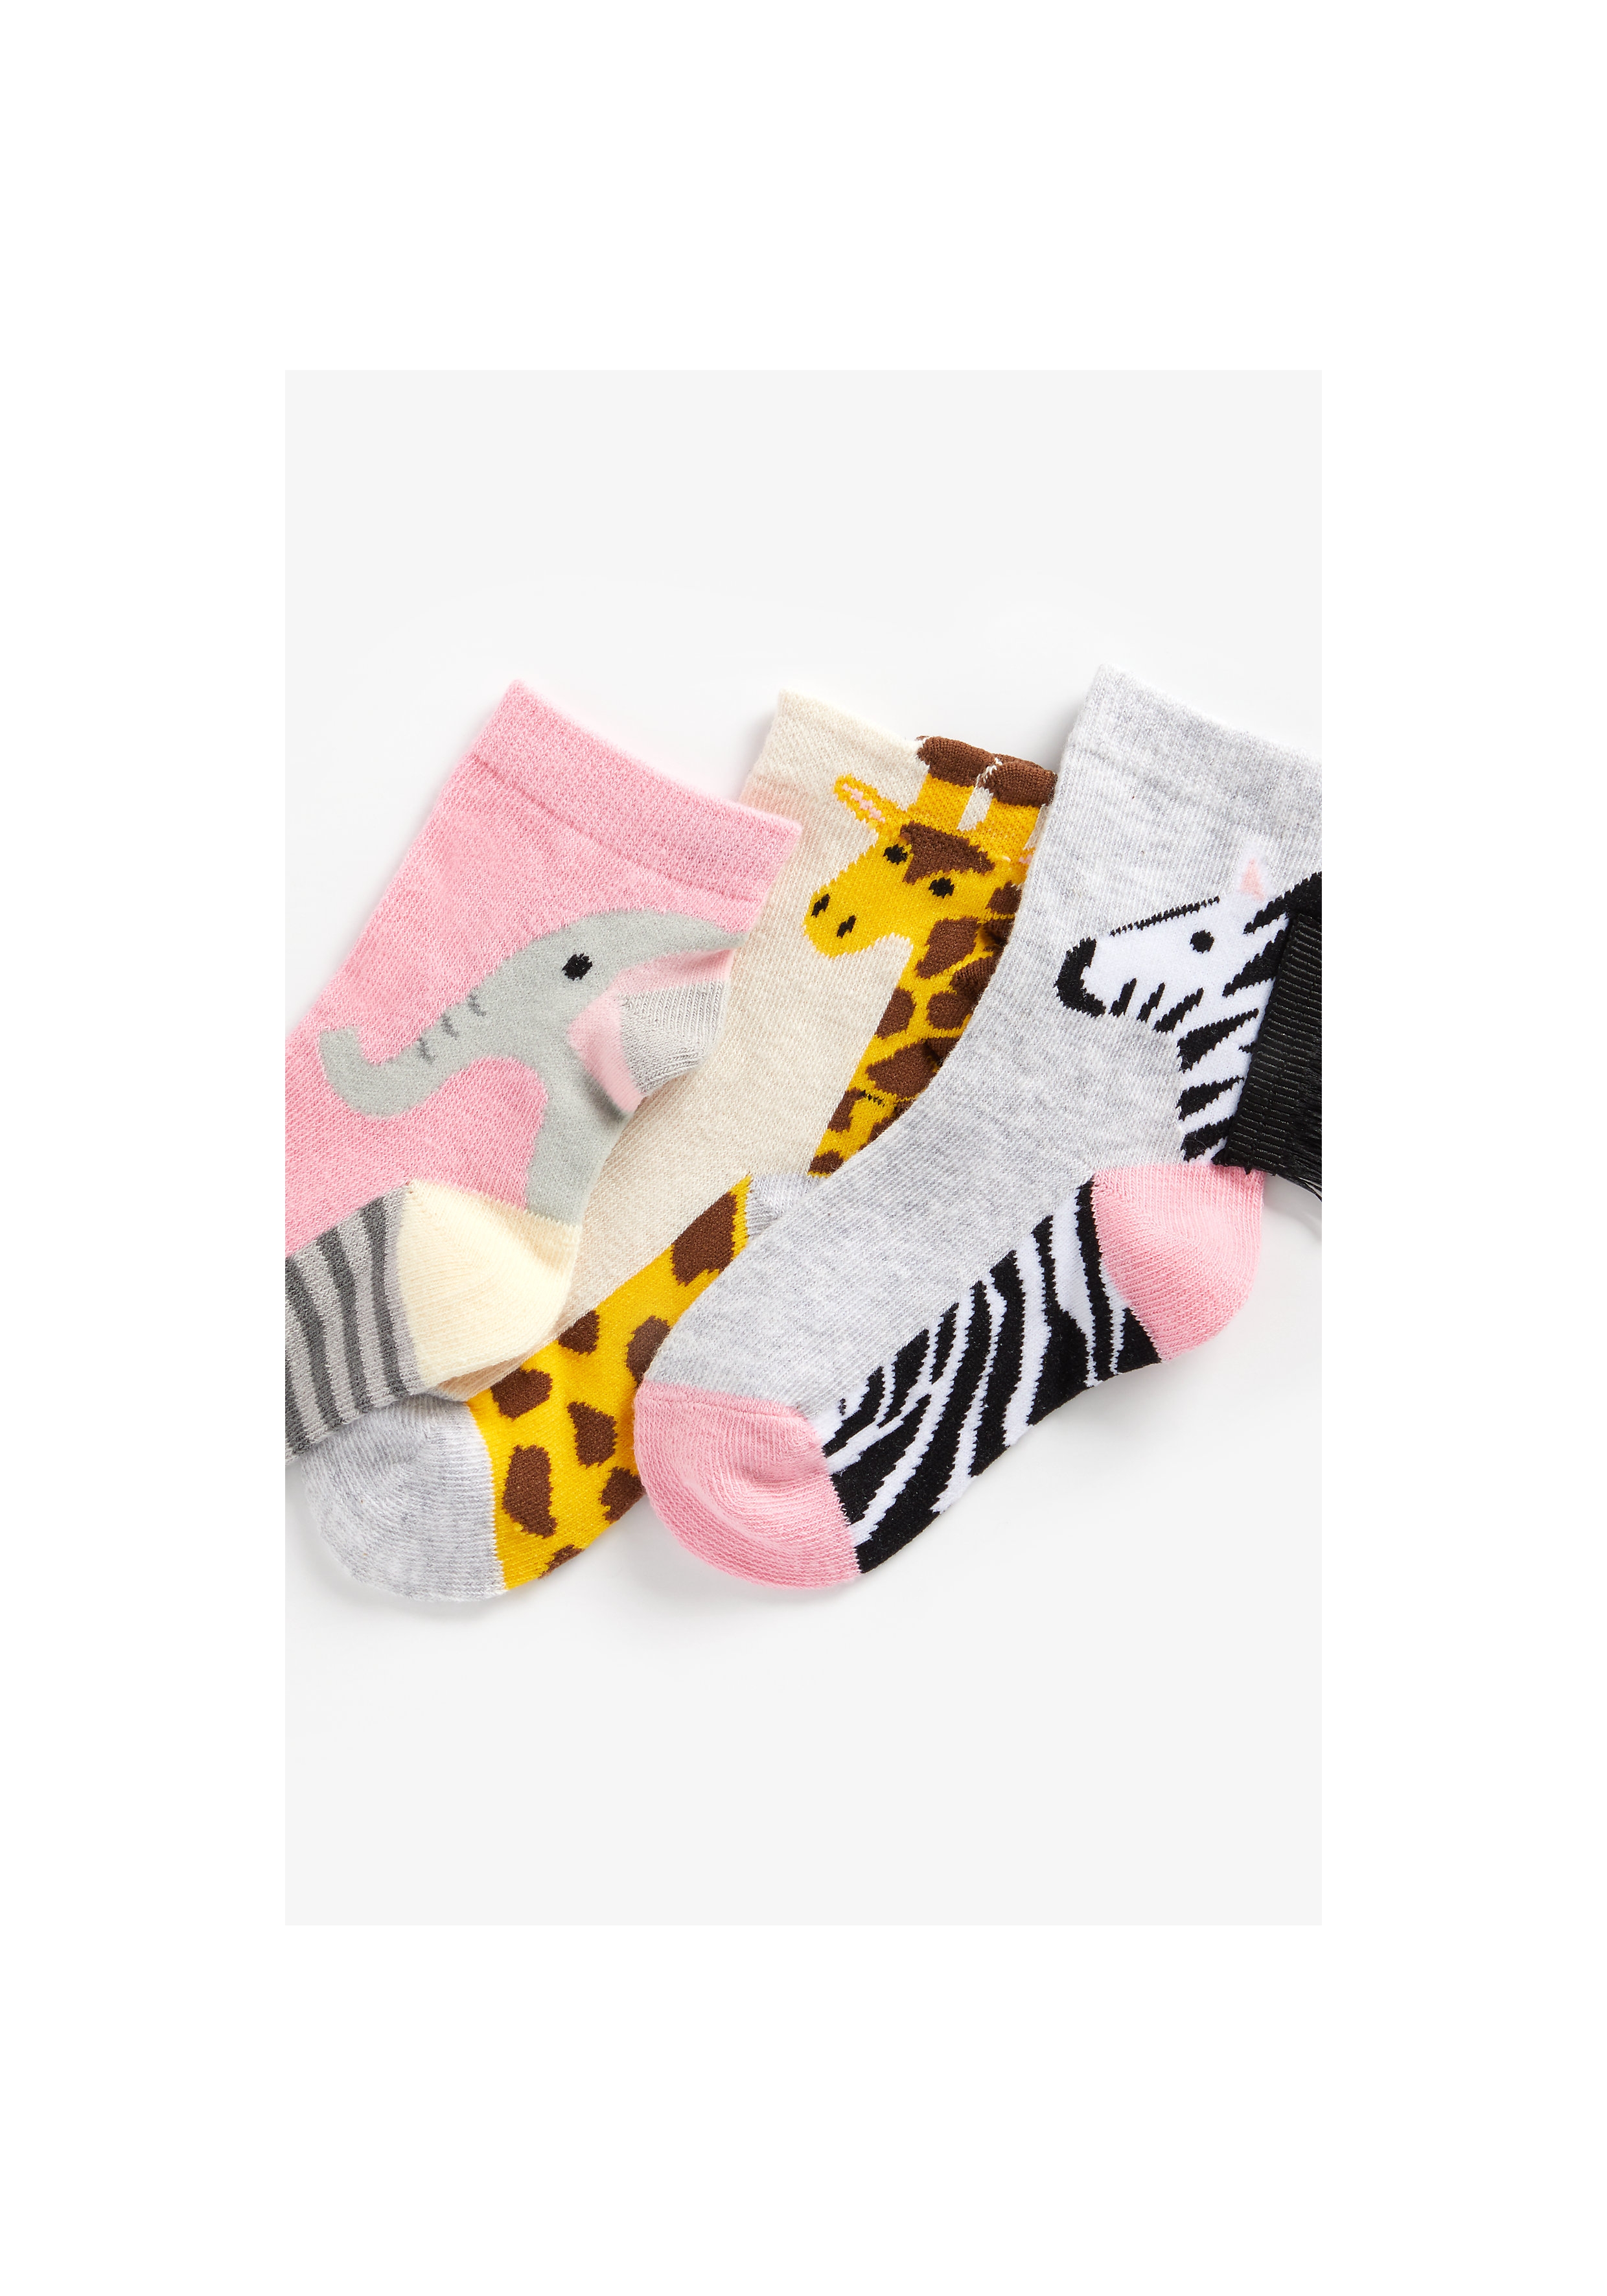 Mothercare | Girls Socks Elephant, Zebra And Giraffe Design - Pack Of 3 - Multicolor 1